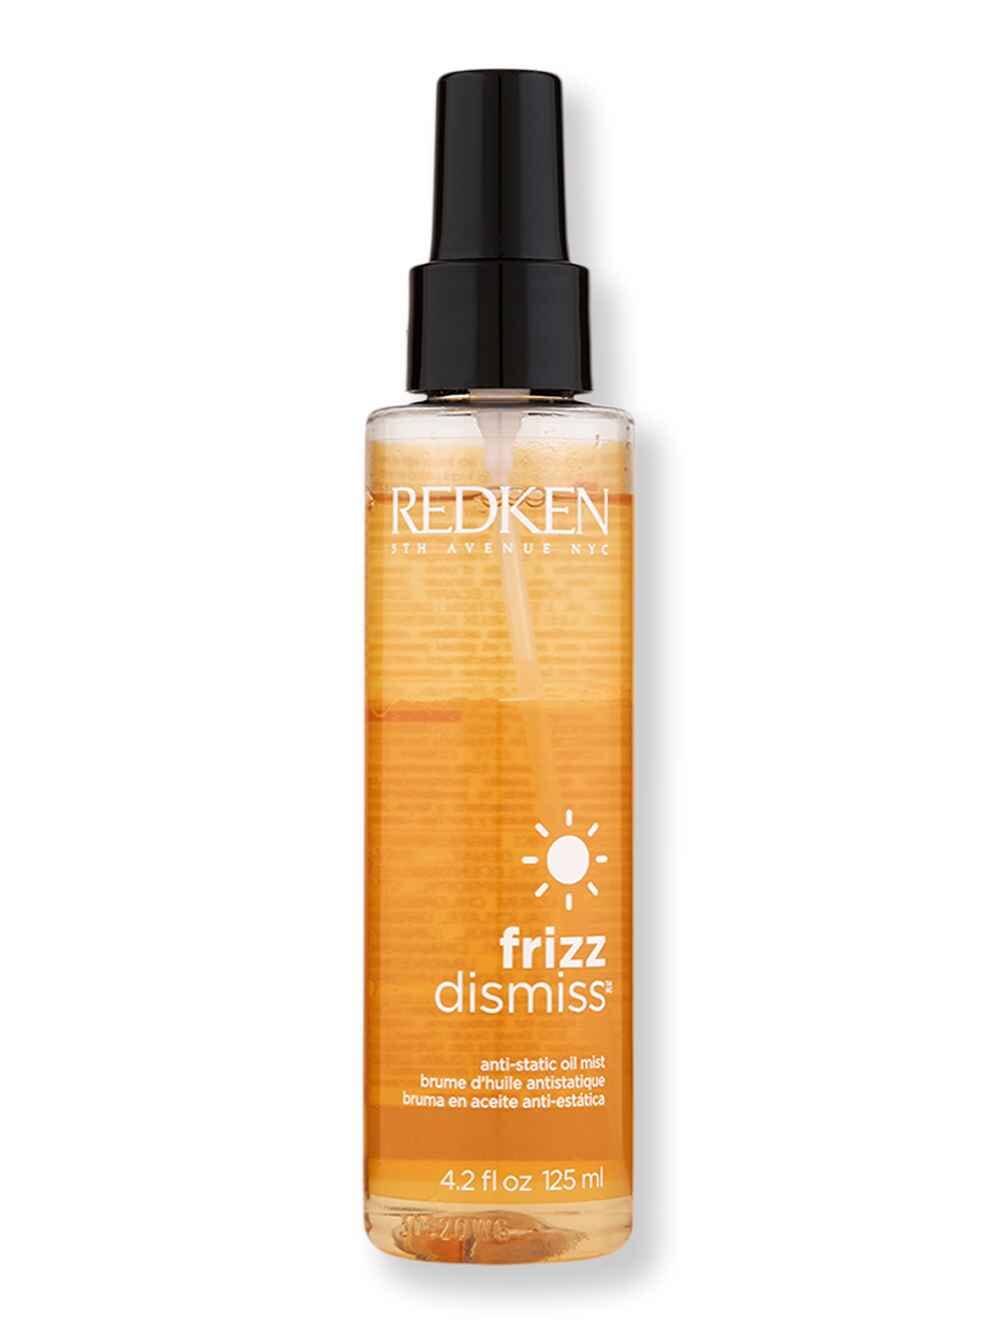 Redken Redken Frizz Dismiss Anti-Static Oil 4.2 oz125 ml Styling Treatments 